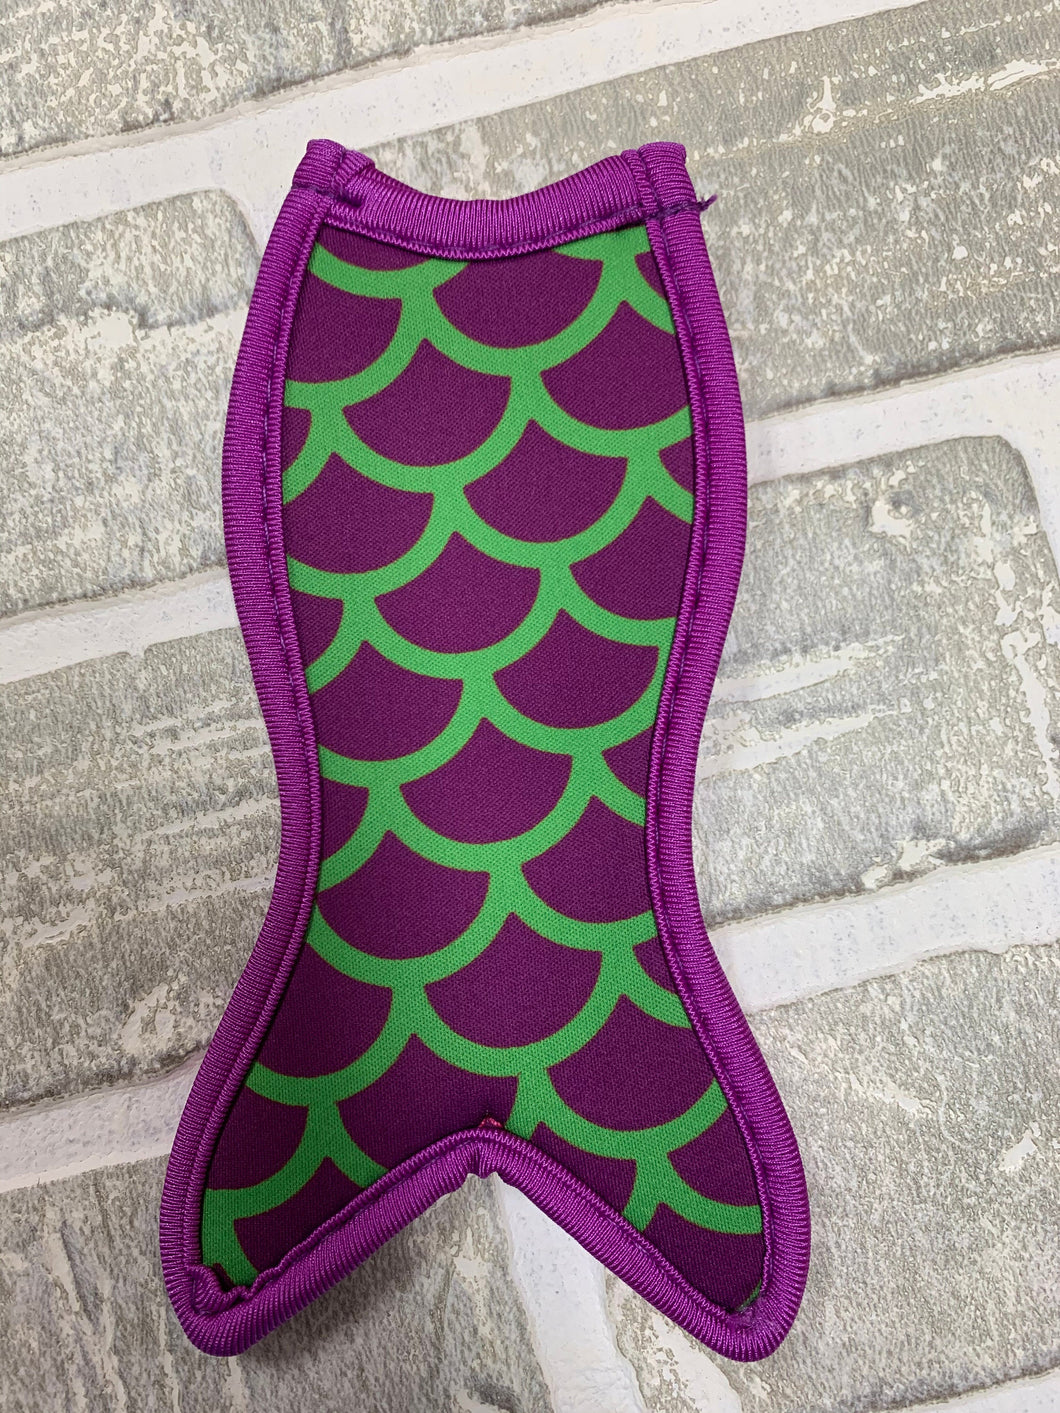 Purple & green mermaid tail blanks